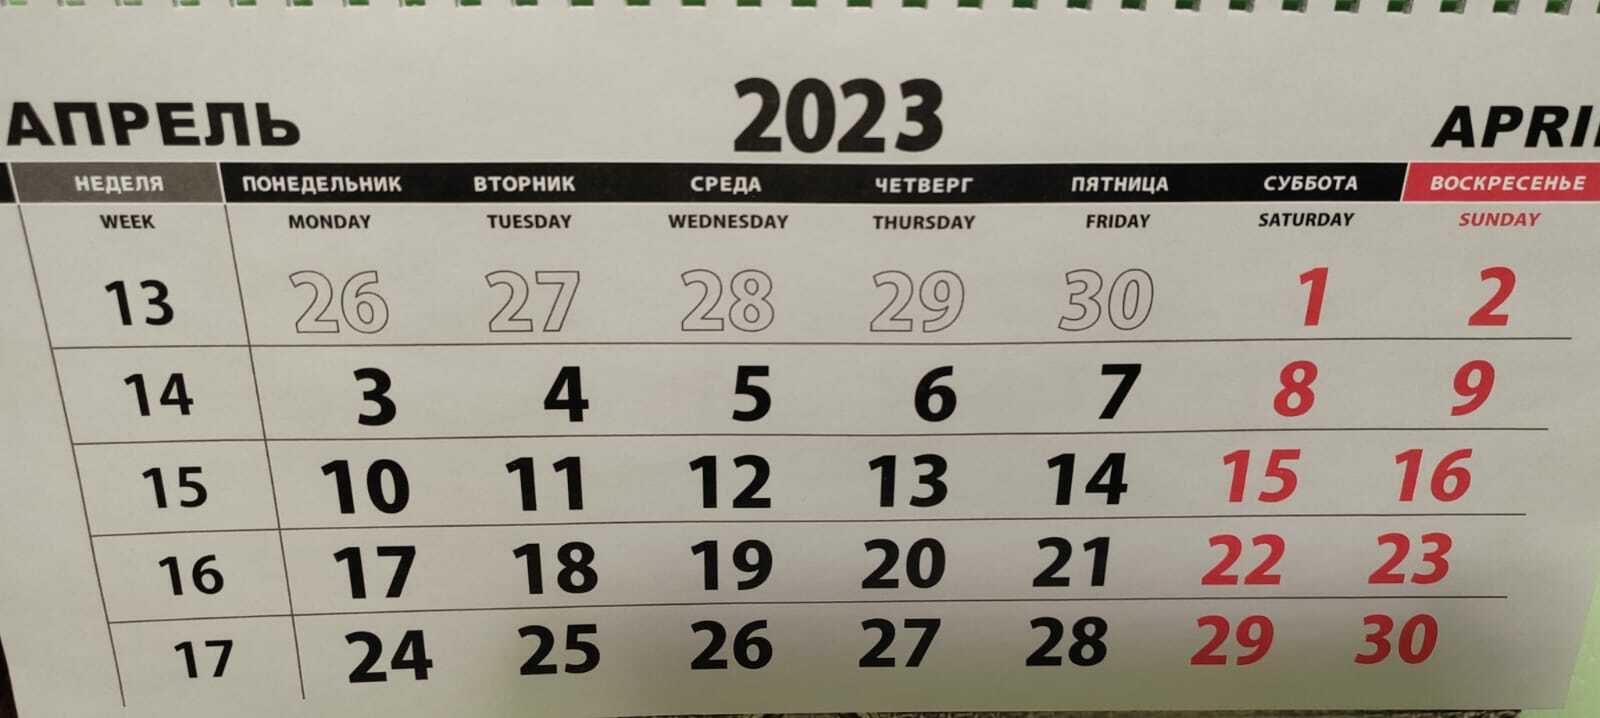 Выходные 2023 башкортостан